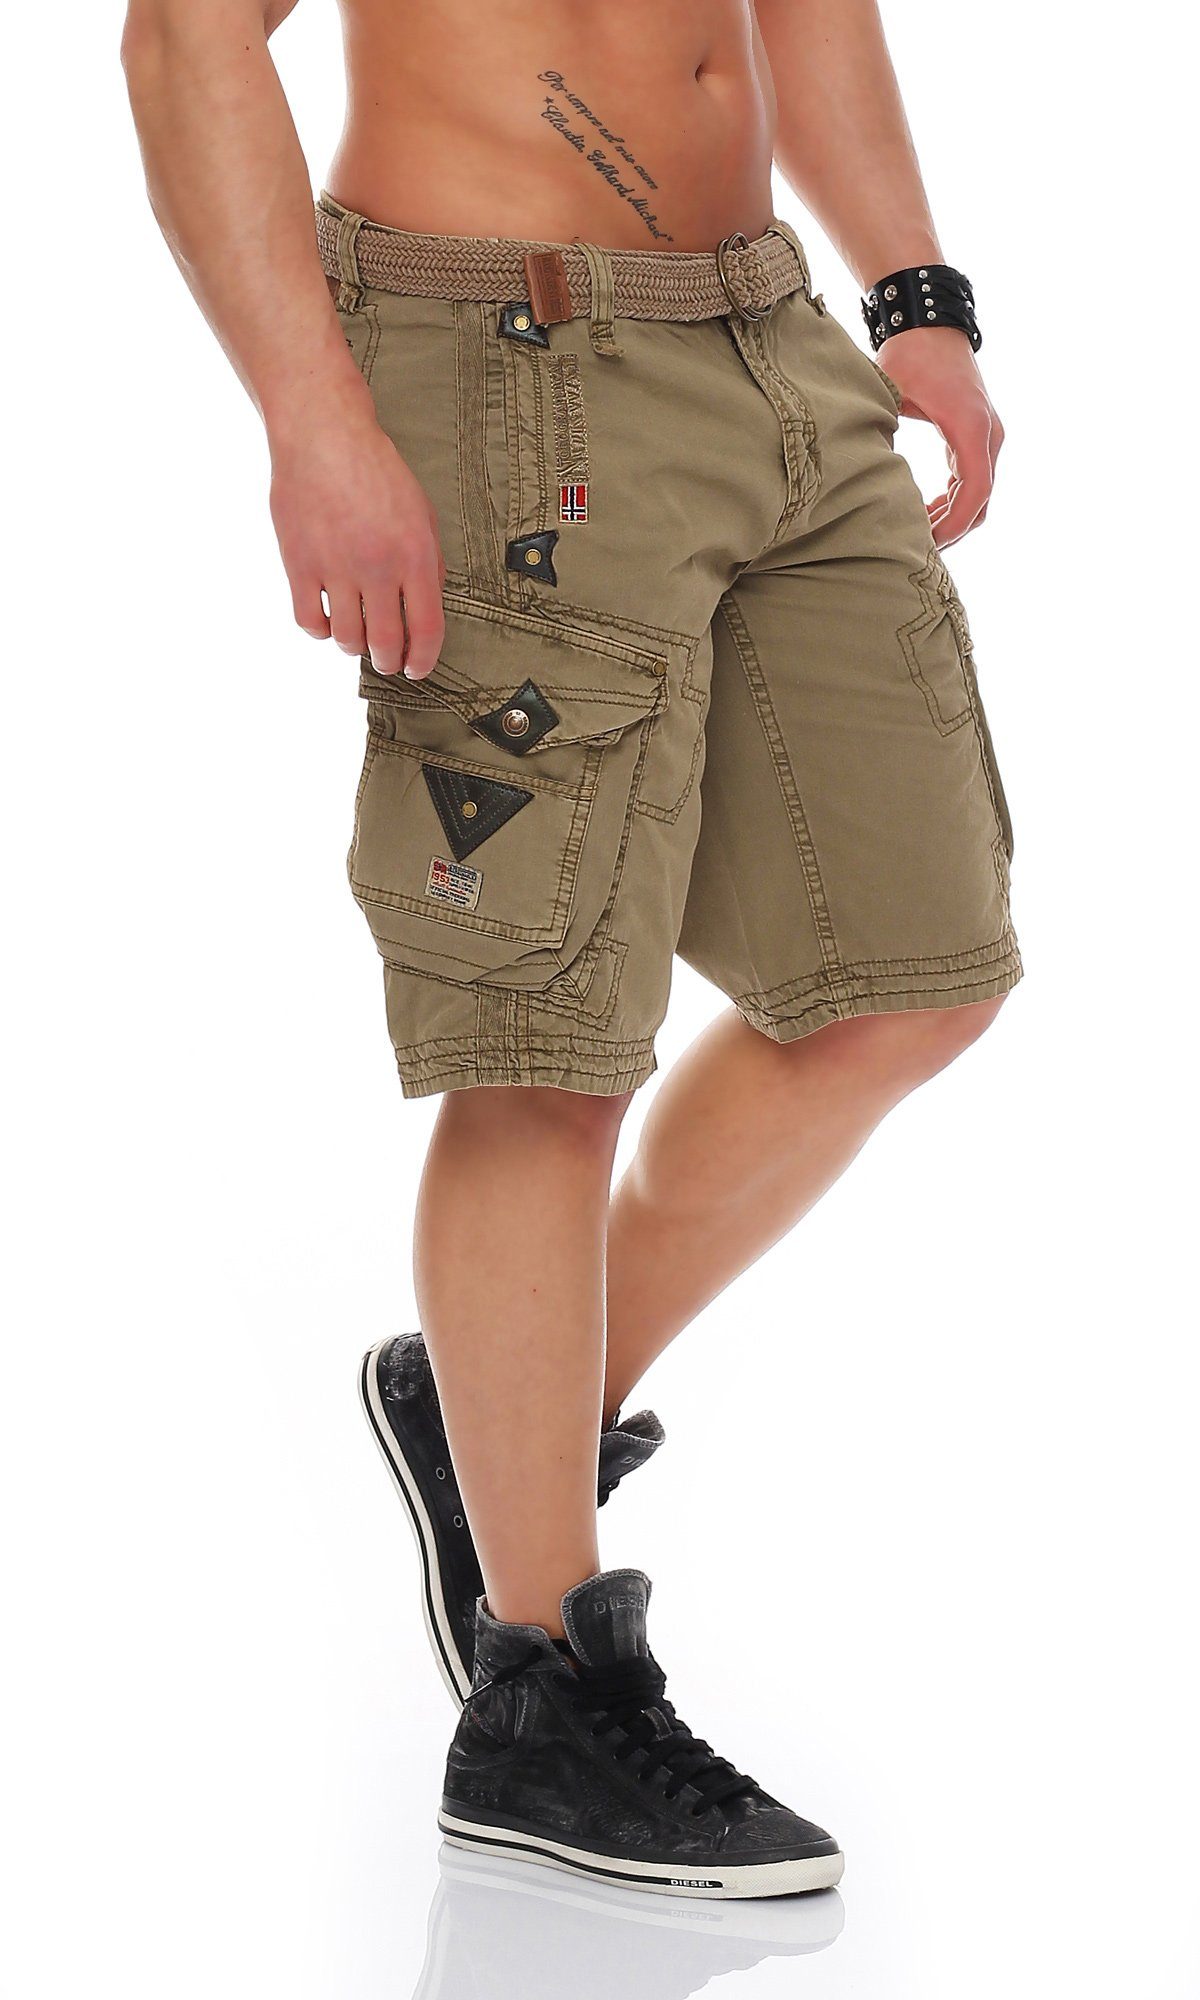 Cargoshorts camouflage G-PERLE Norway Shorts / Gürtel) Shorts, kurze Mastic unifarben Geographical Herren (mit Hose, abnehmbarem